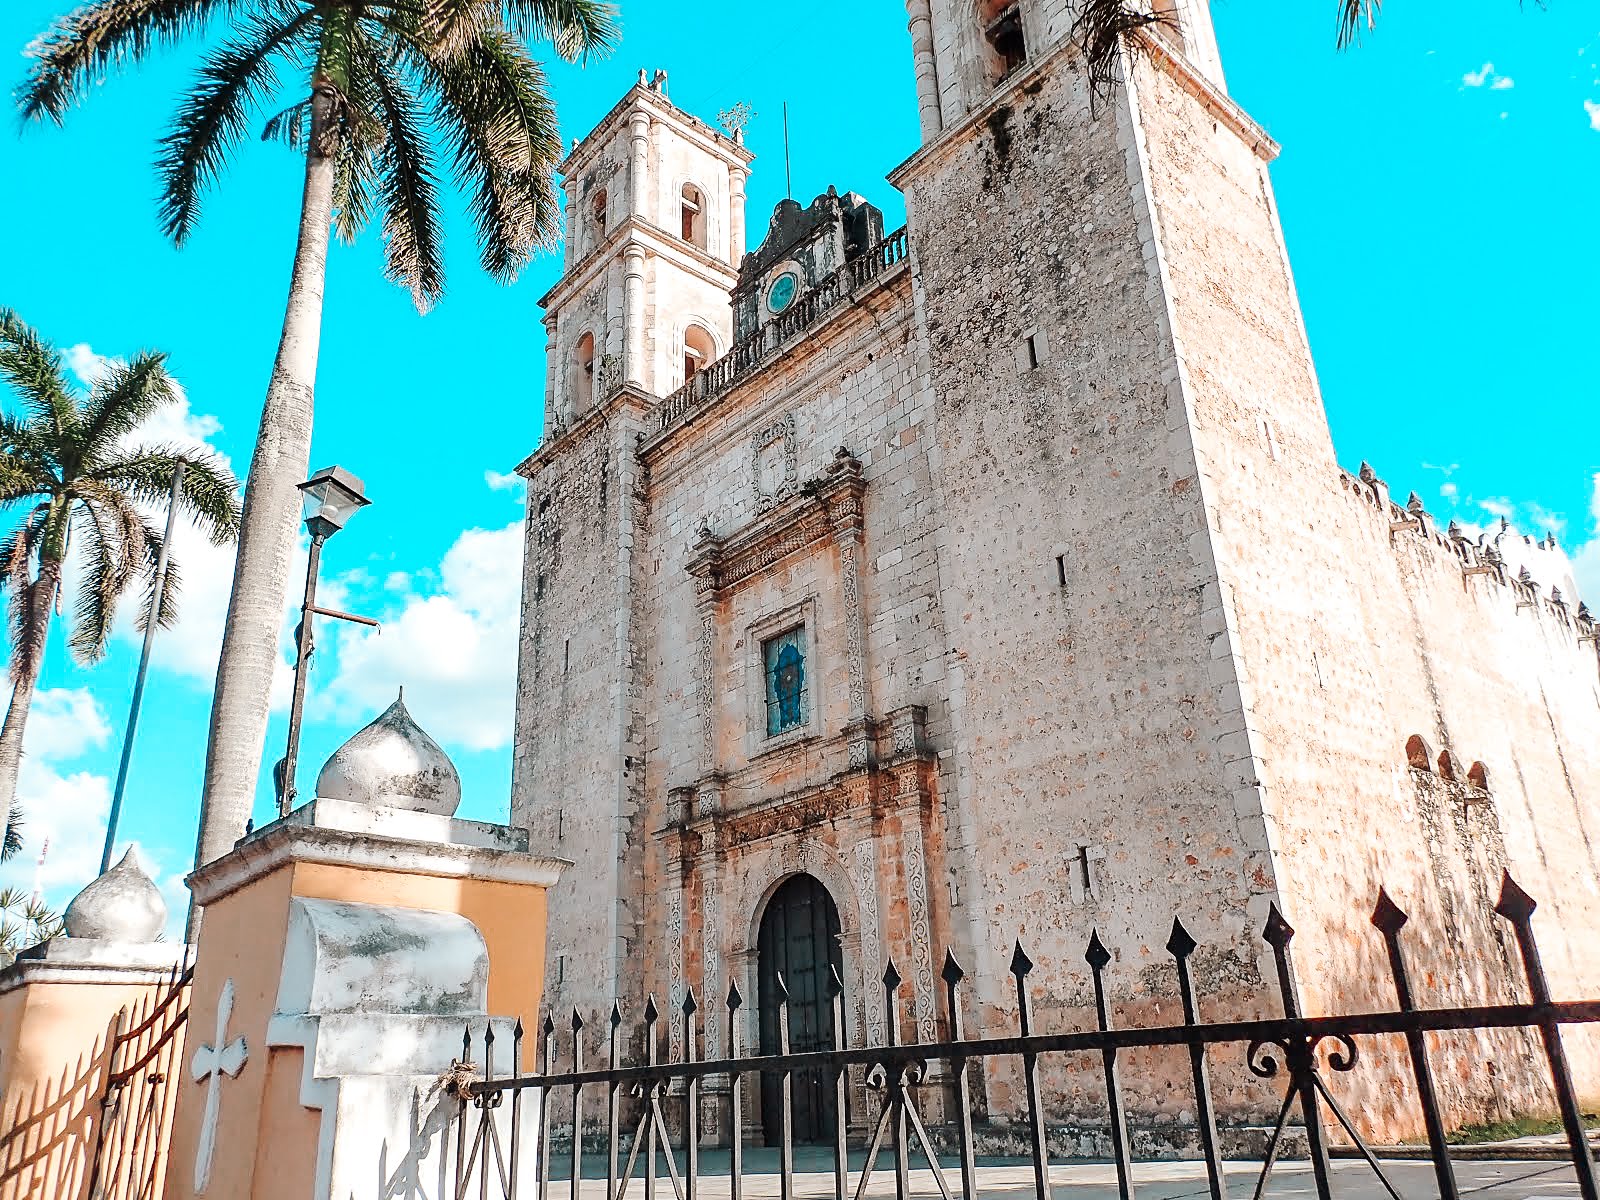 la cathédrale de San Servacio à valladolid au mexique avec deux palmiers devant et ses deux tours avec une croix en son sommet